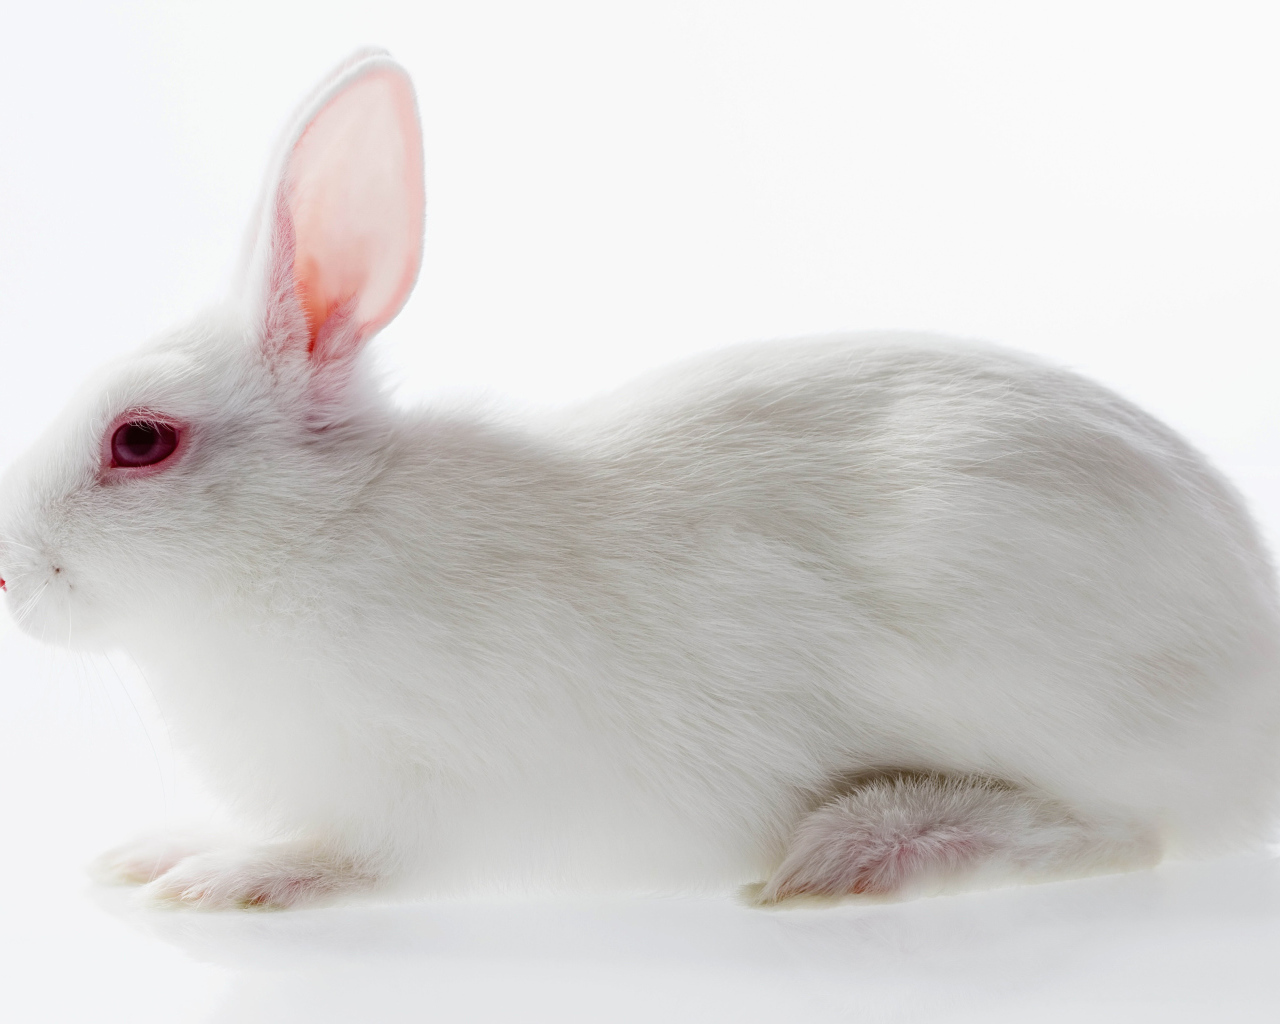 Белый кролик с красными глазами на белом фоне